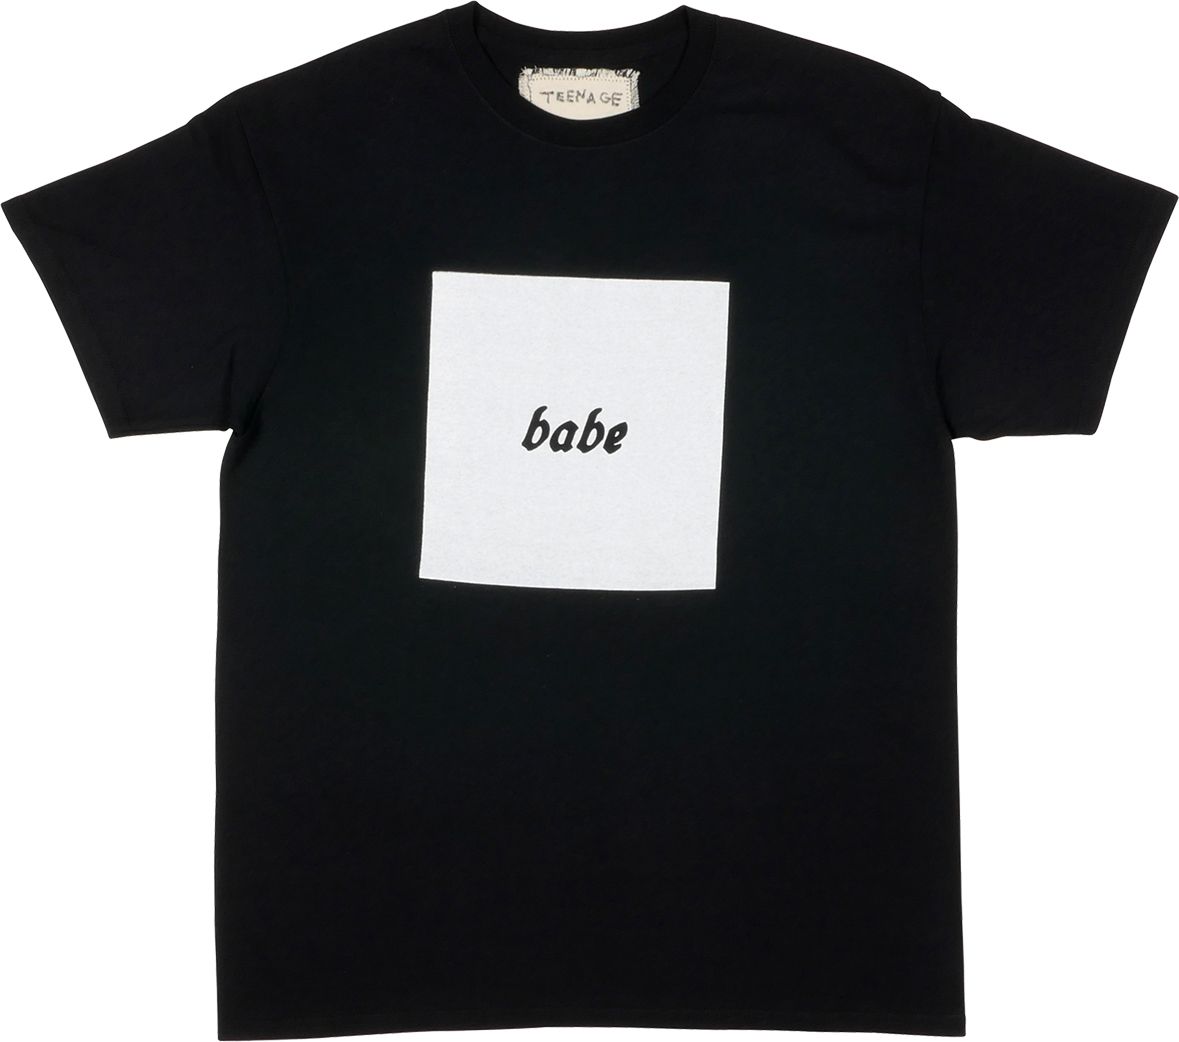 Teenage Angst "Babe" T-Shirt - B/W